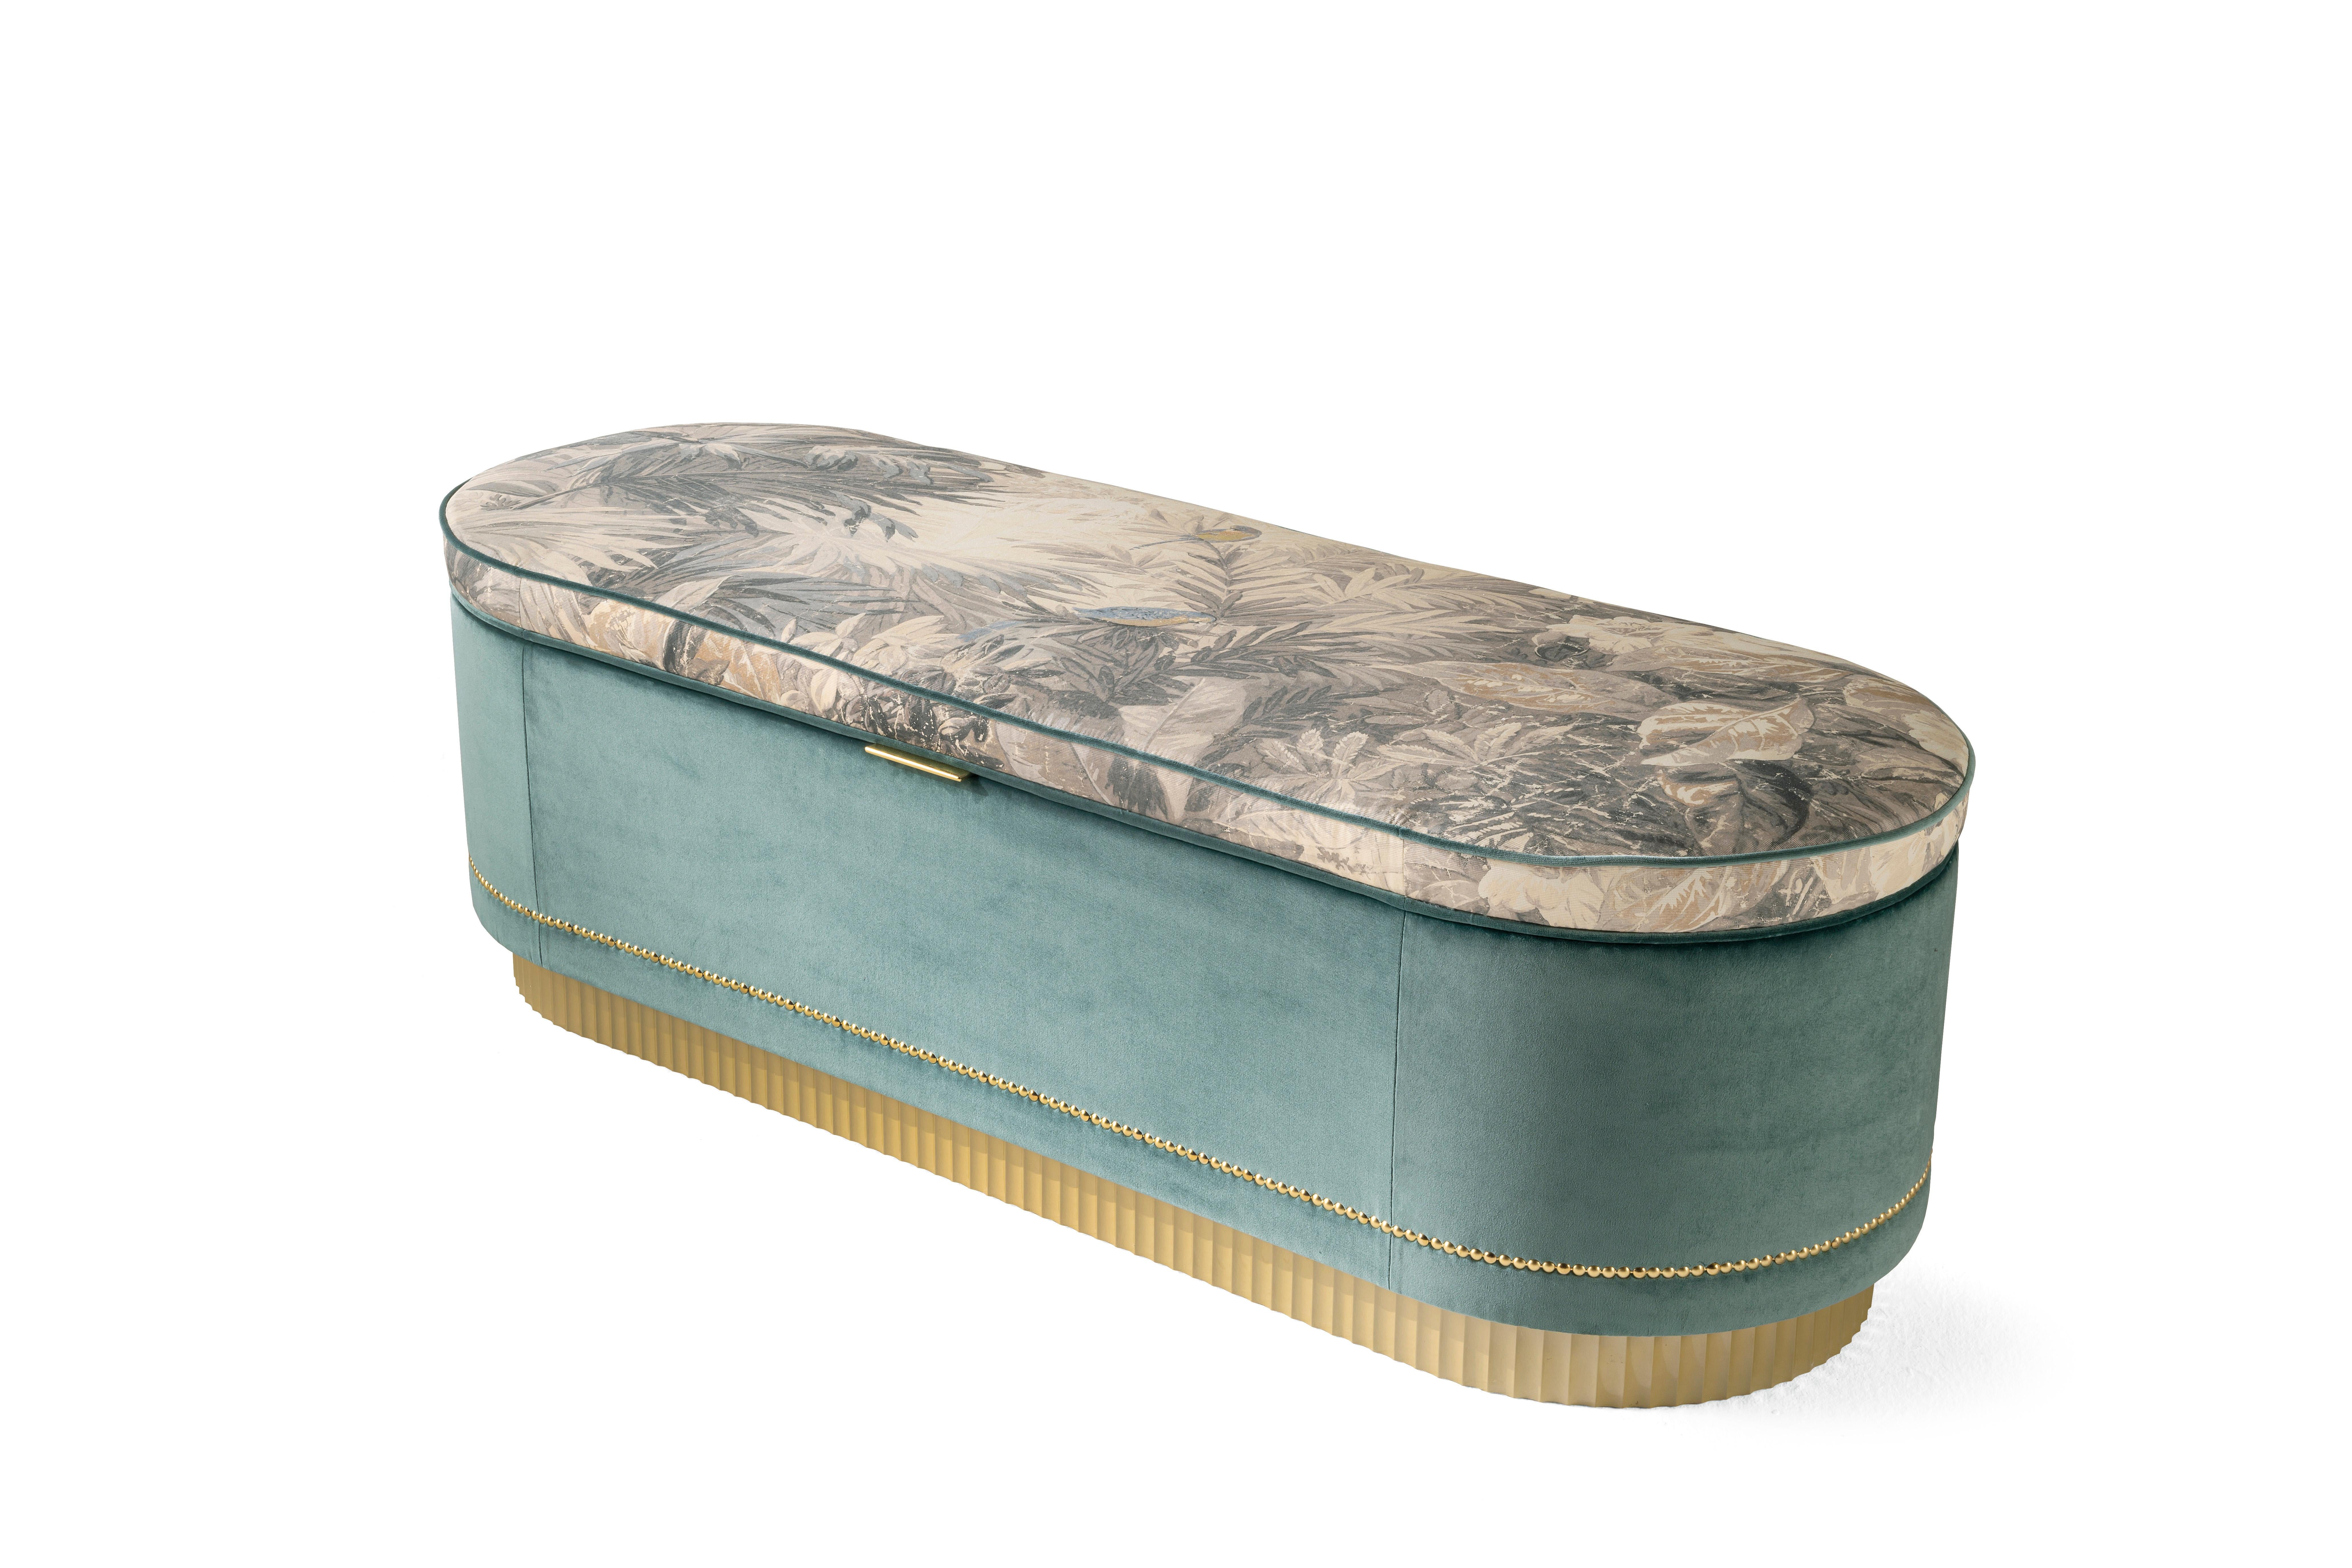 Als dekoratives Möbelstück mit exotischen Anklängen präsentiert sich Meriam mit einem Sitzbezug aus bedrucktem Selva-Stoff, der mit goldenen Nieten und einem geriffelten, goldlackierten Fuß verziert ist. In dieser neuen Version ist der Hocker auch